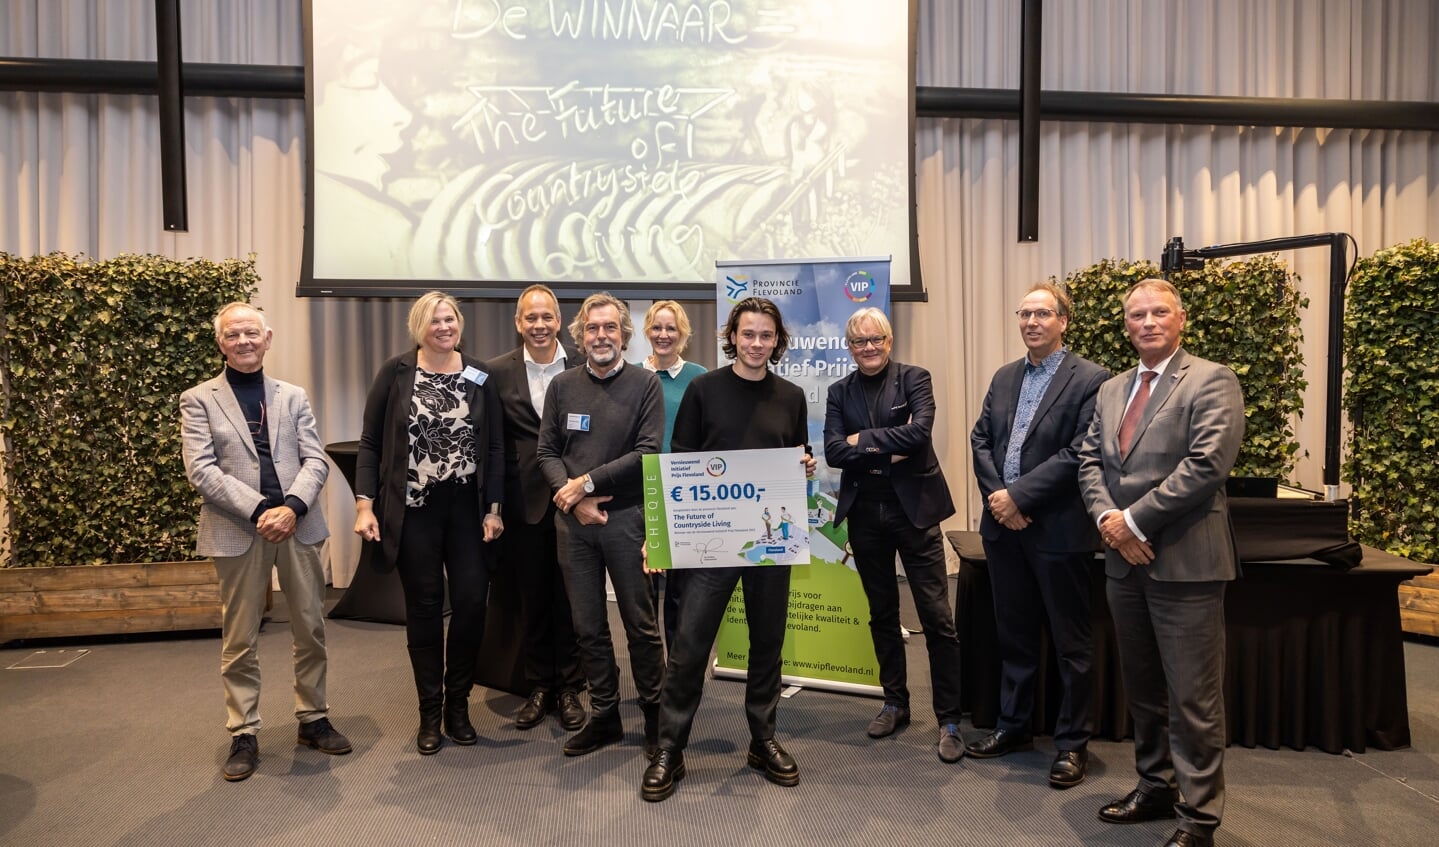 v.l.n.r. Gerard Boers (Waterpark Zeewolde), Mady-Ann van Doornik (De Gedenkoever), Randolf Kobus (De Gedenkoever), Rinus Bos (De Gedenkoever), Eva Vriend (jurylid), Mees Wijnants (The Future of Countryside Living – Winnaar VIP Flevoland 2022), Eduard Plate (jurylid), Bart Buijs (jurylid) en Jan de Reus (voorzitter jury)